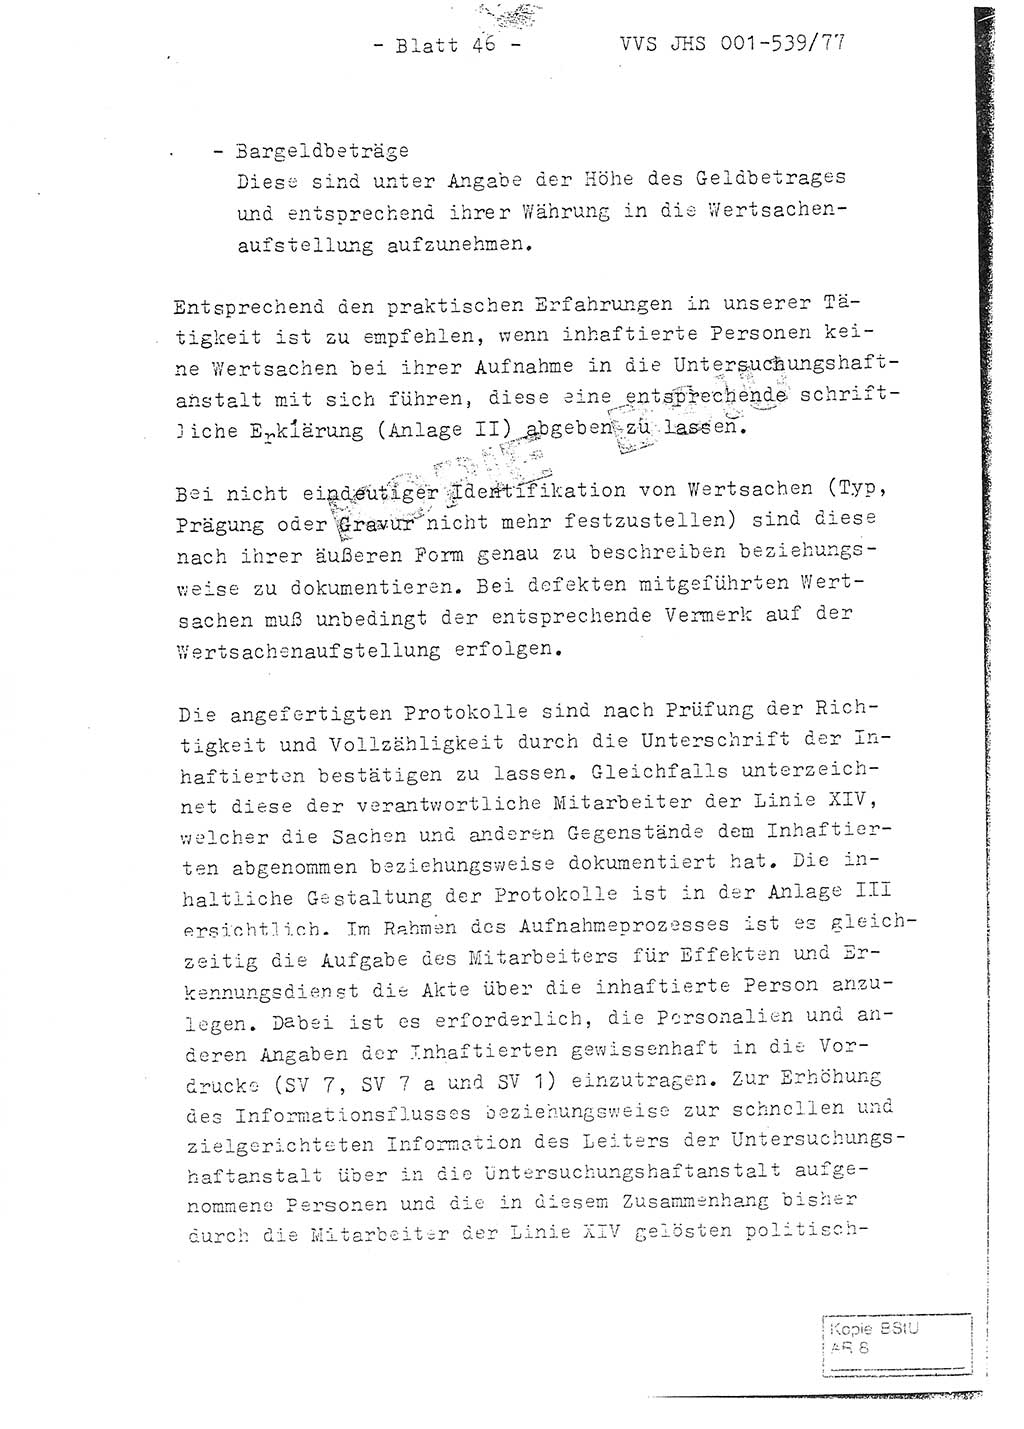 Fachschulabschlußarbeit Hauptmann Dietrich Jung (Abt. ⅩⅣ), Leutnant Klaus Klötzner (Abt. ⅩⅣ), Ministerium für Staatssicherheit (MfS) [Deutsche Demokratische Republik (DDR)], Juristische Hochschule (JHS), Vertrauliche Verschlußsache (VVS) 001-539/77, Potsdam 1978, Seite 46 (FS-Abschl.-Arb. MfS DDR JHS VVS 001-539/77 1978, S. 46)